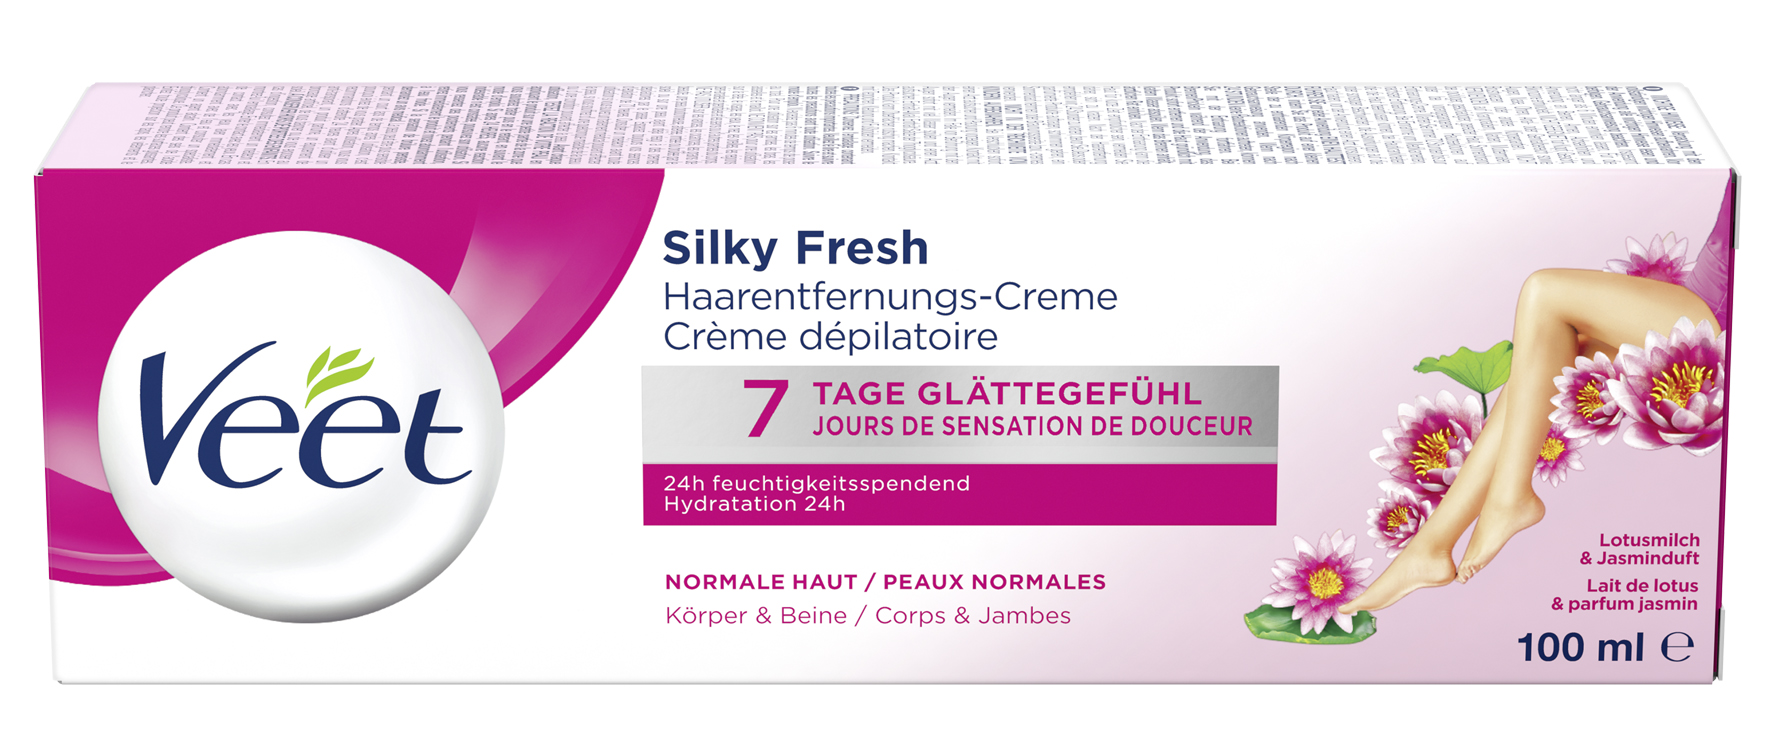 VEET Haarentfernungs-Creme Silk & Fresh für normale Haut